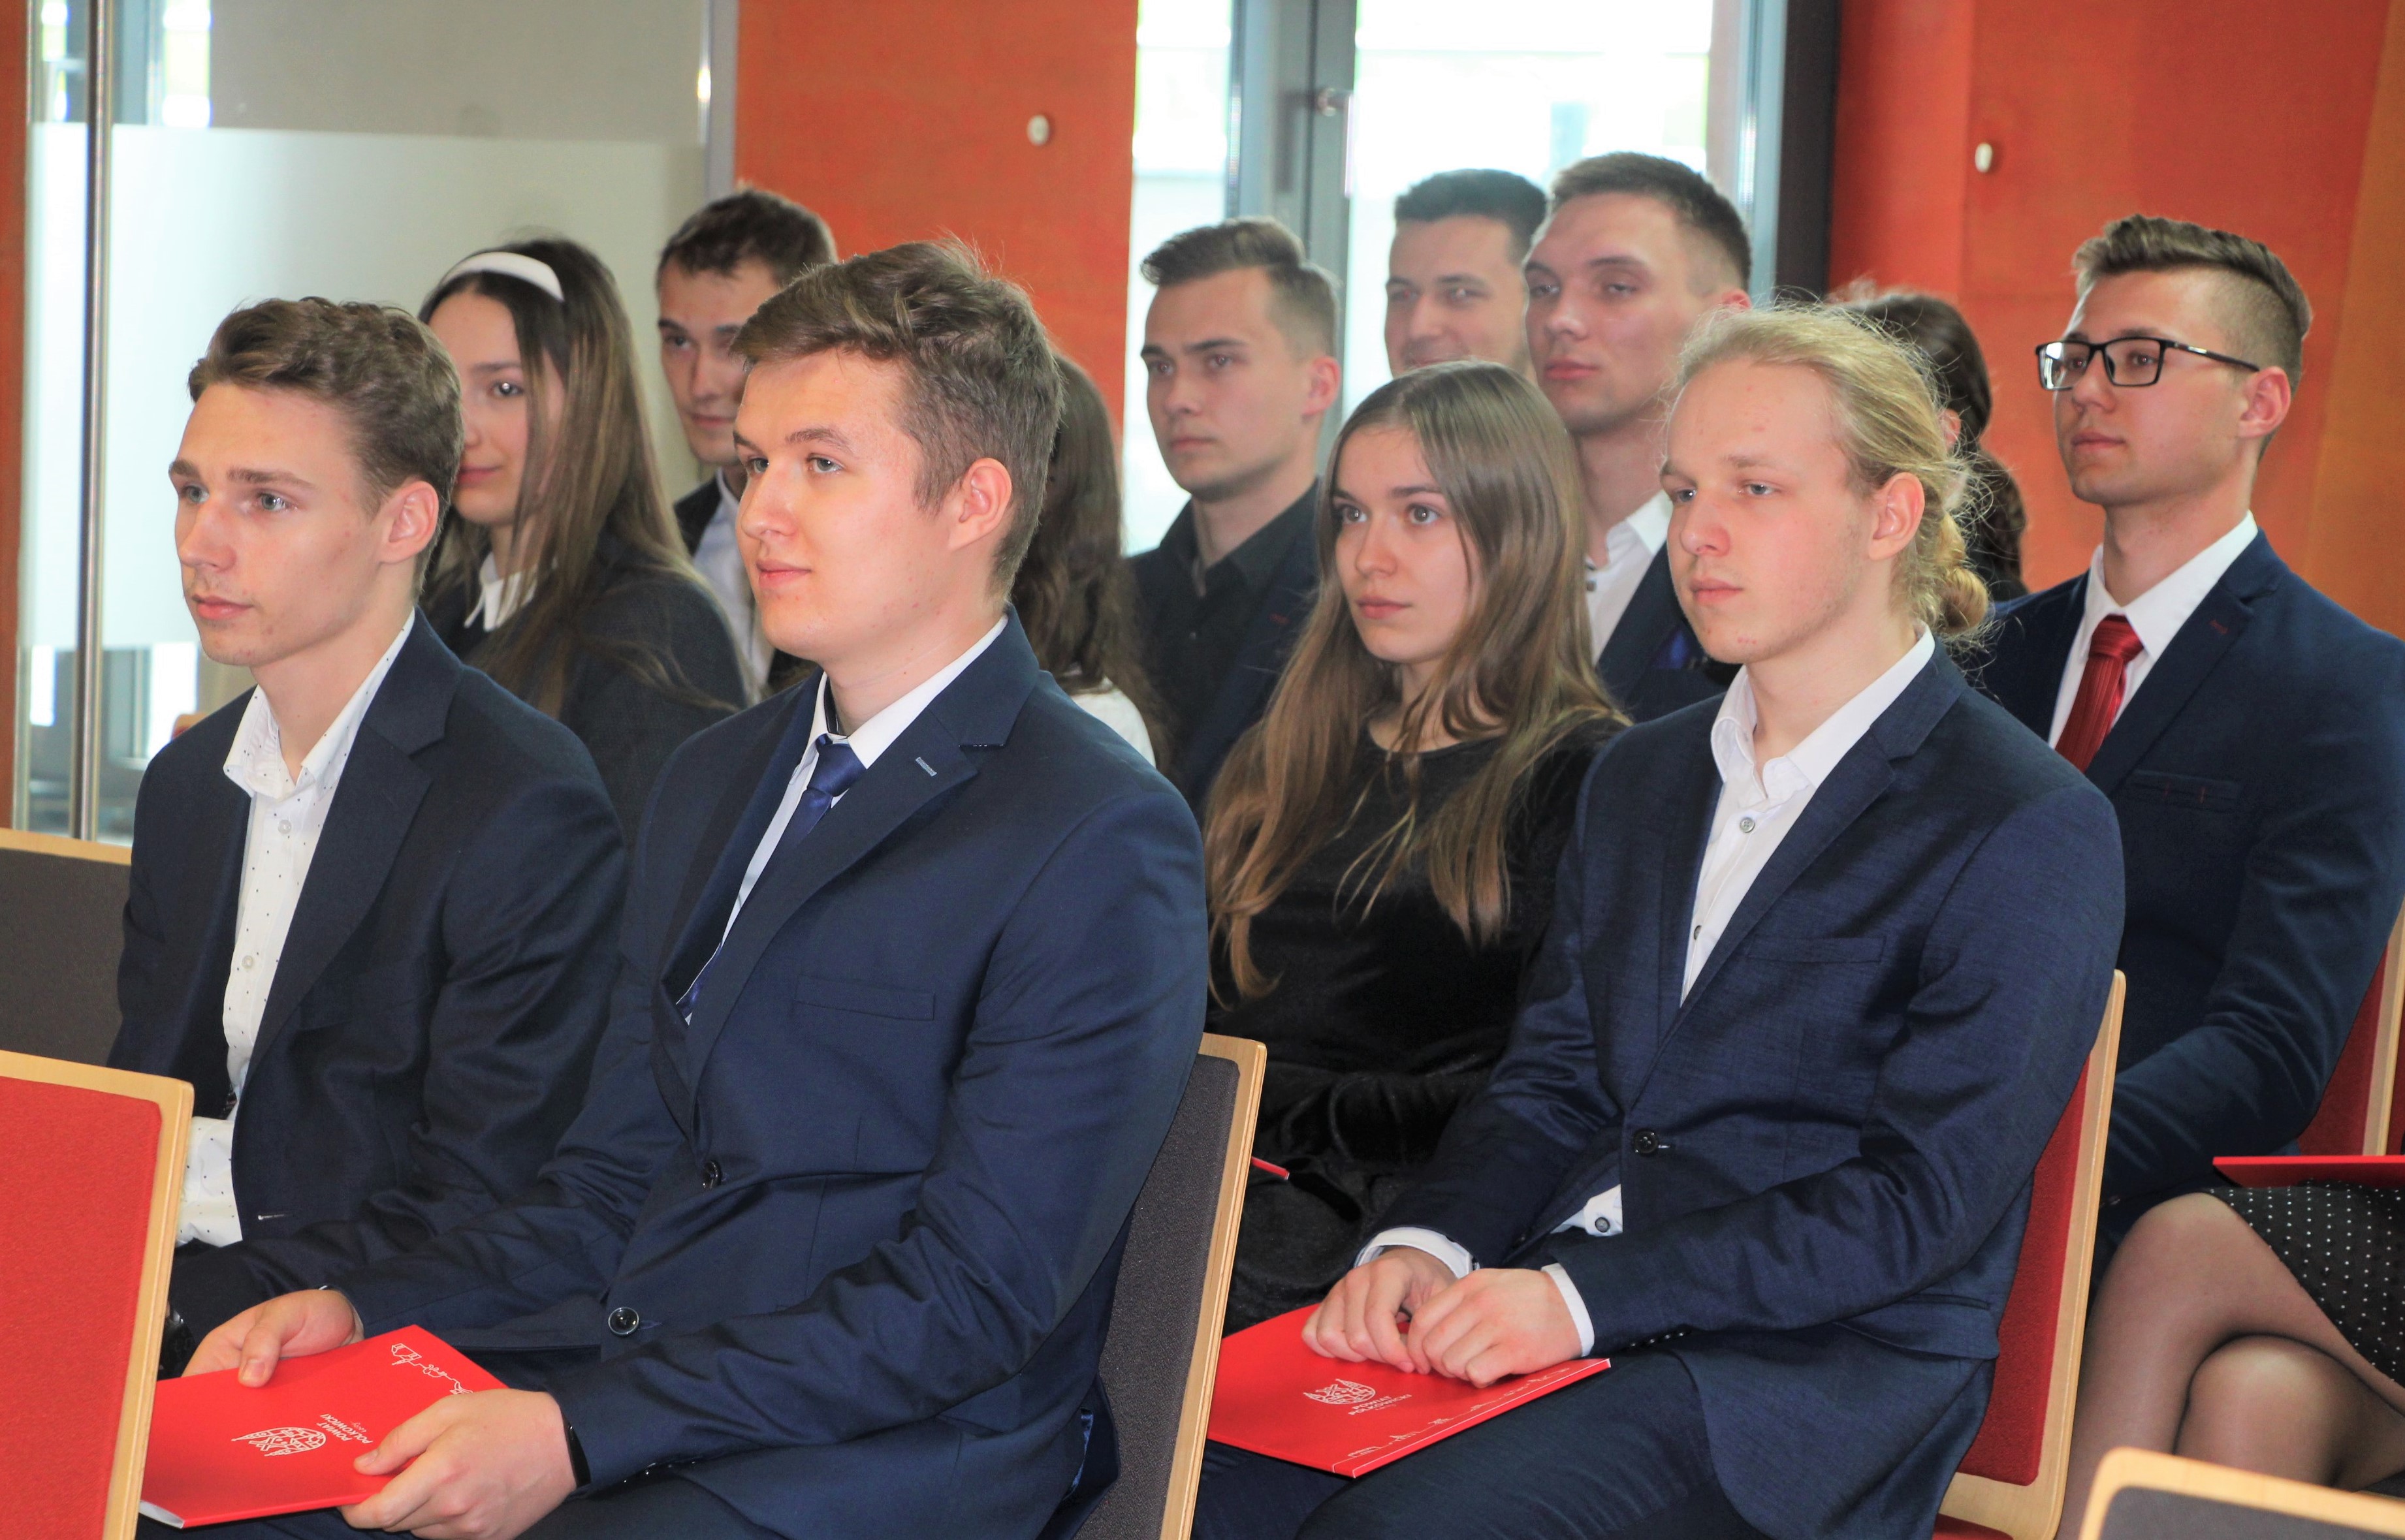 Grupa absolwentów siedzi na krzesłach w Sali Konferencyjnej podczas wręczania nagród Starosty Polkowickiego za najlepsze wyniki w nauce